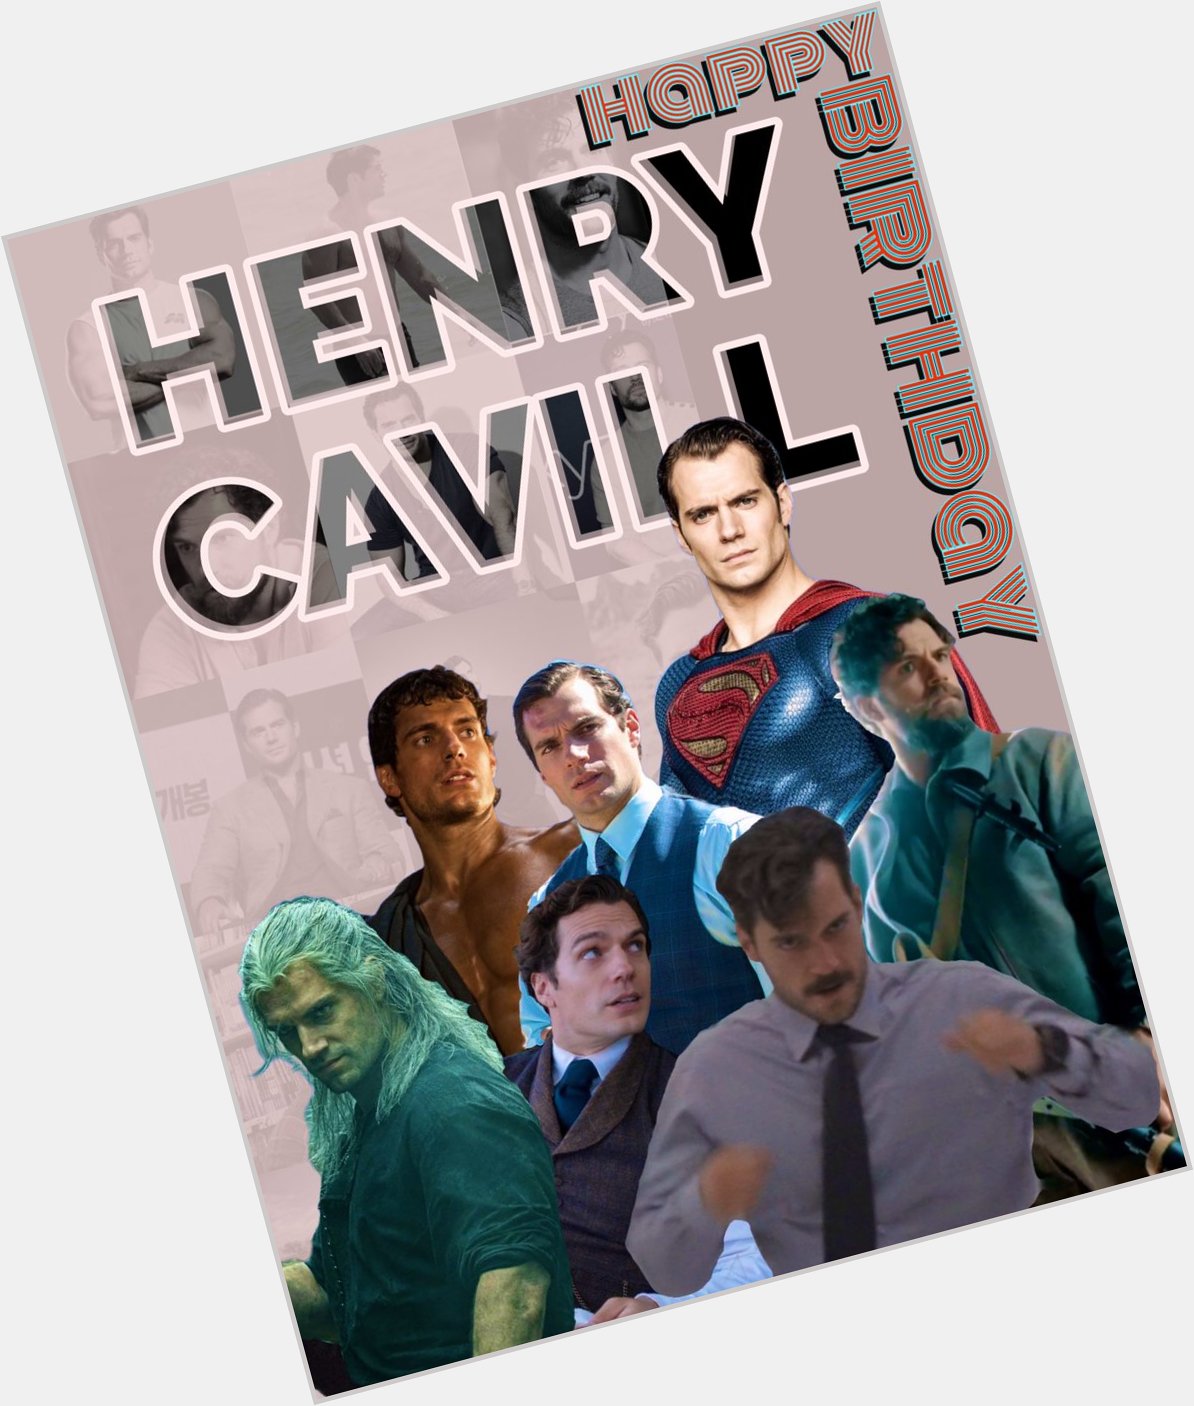 Happy Birthday to the legendary Henry Cavill. 